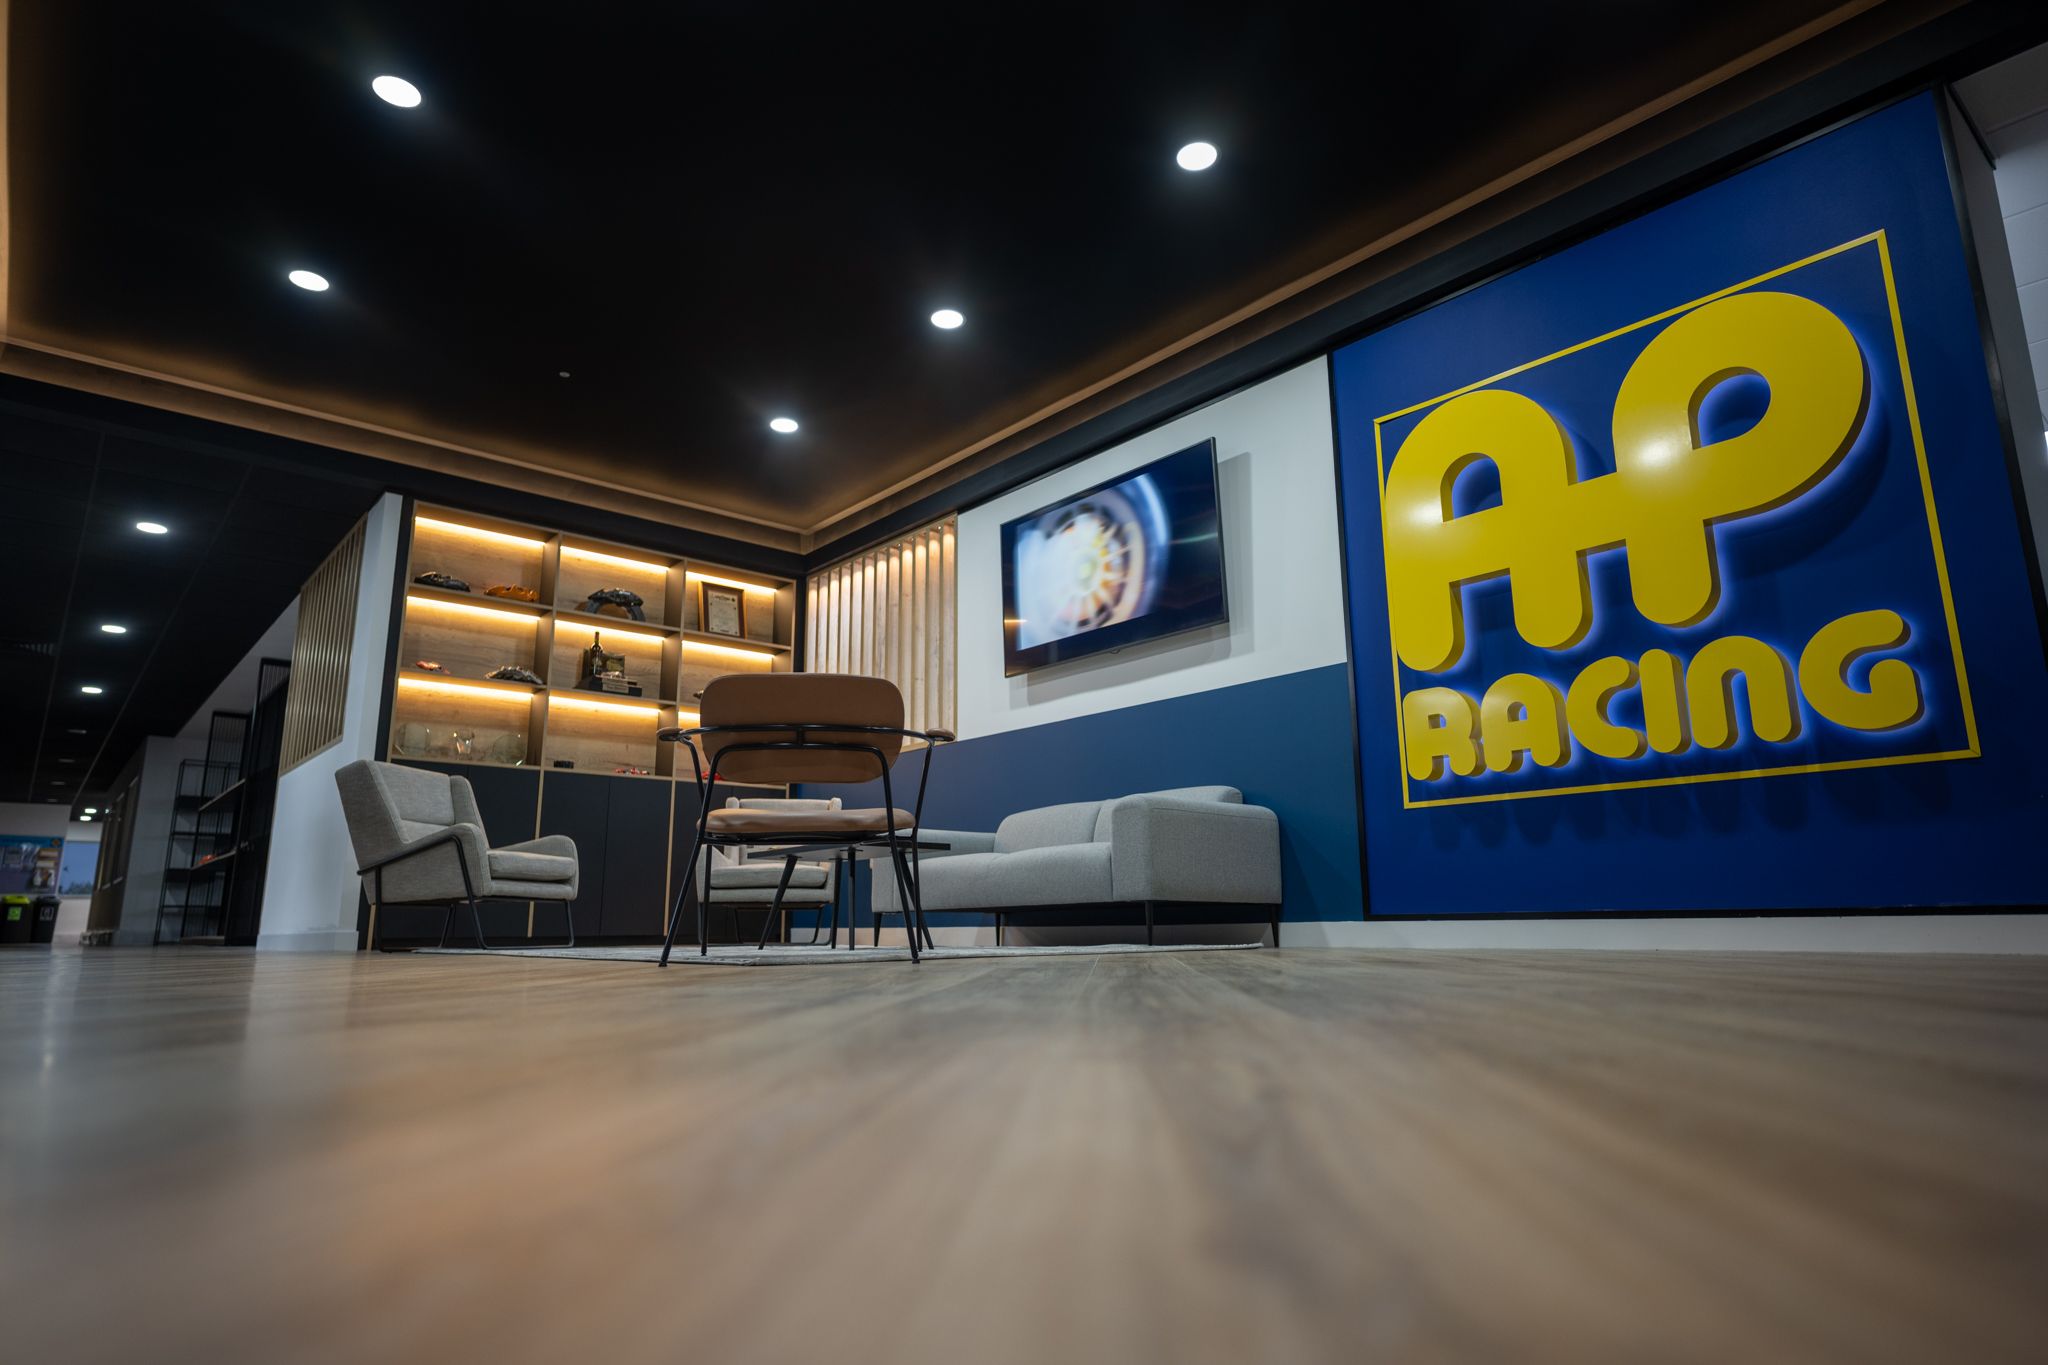 AP Racing’s workforce grows to meet unprecedented demand